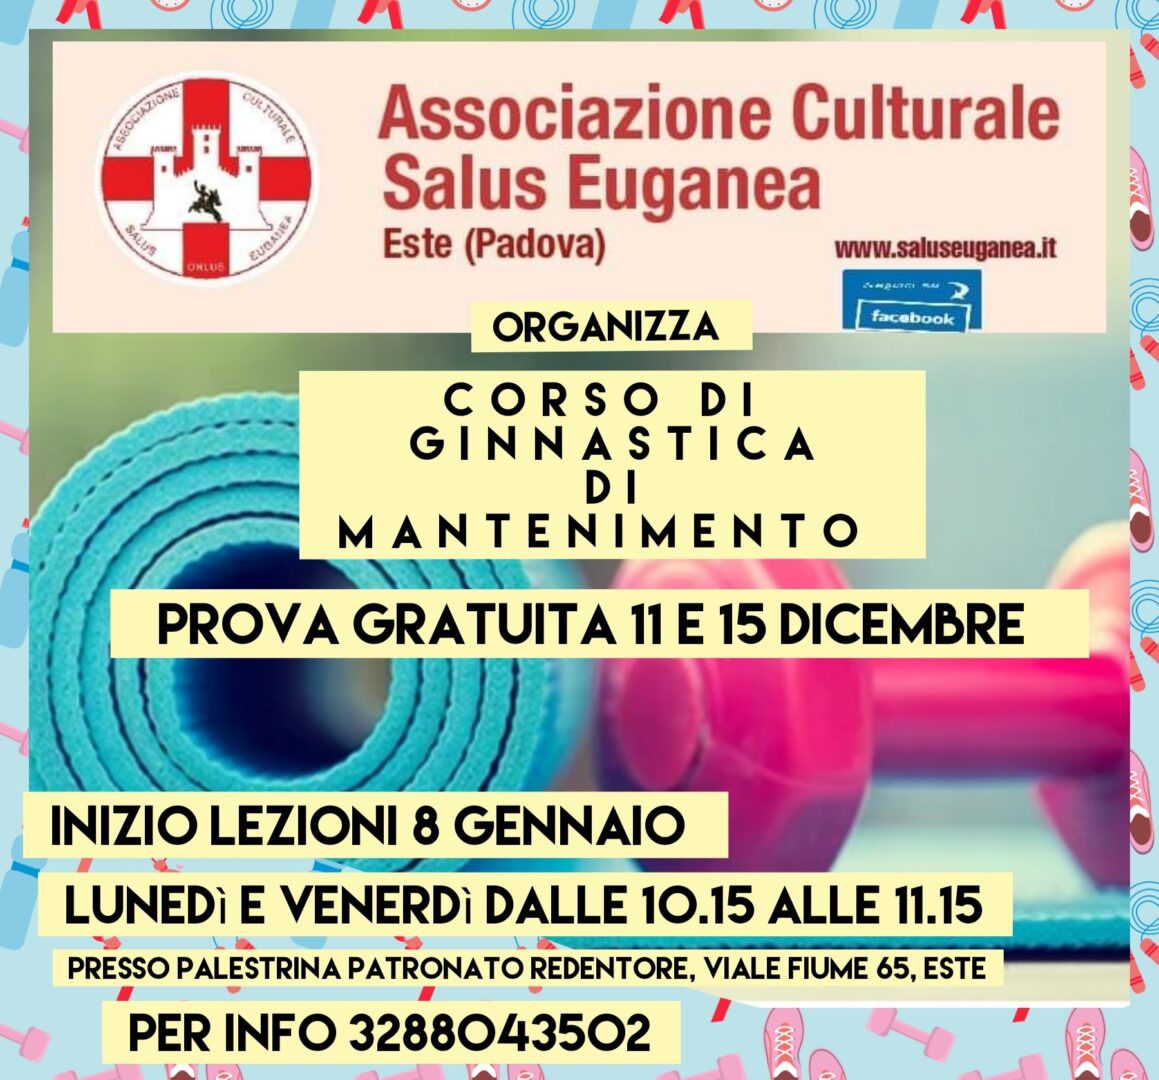 Associazione Culturale Salus Euganea